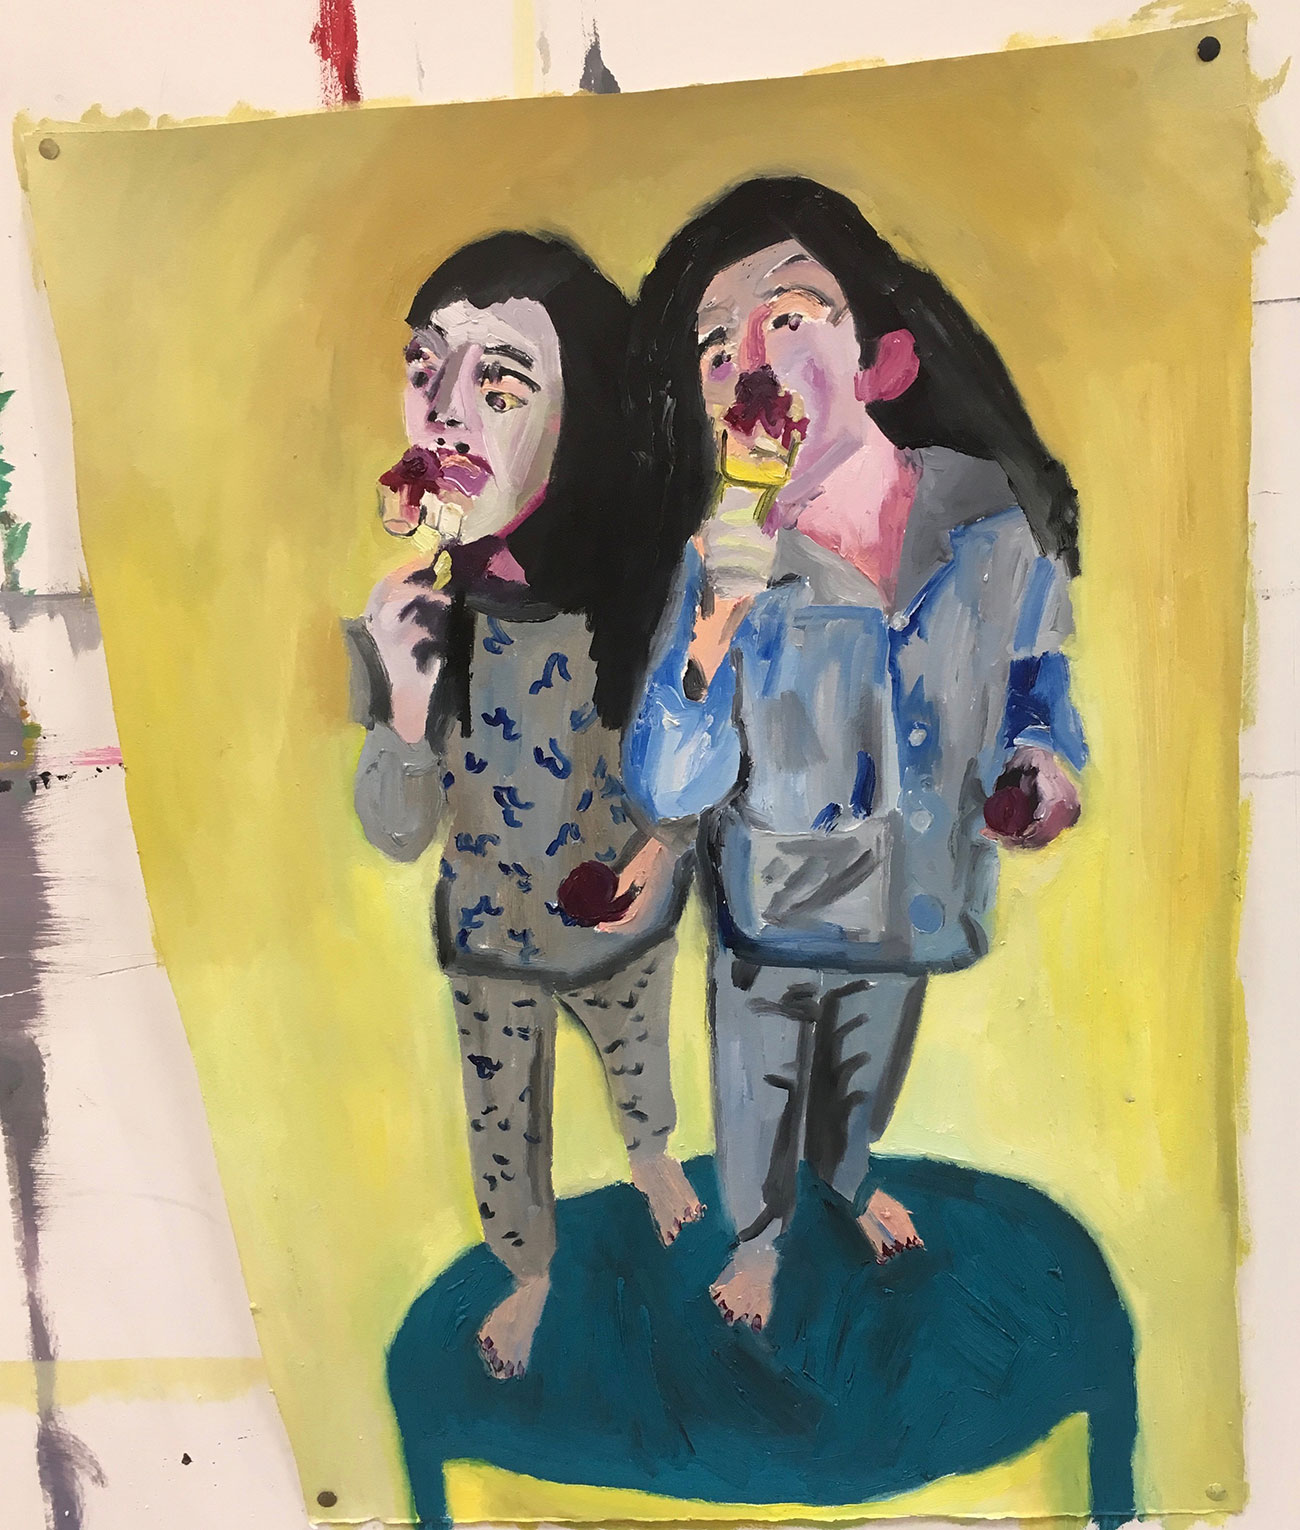 Clara et Milly en train de manger une glace, 2019 - Oil on paper 68 x 54 cm